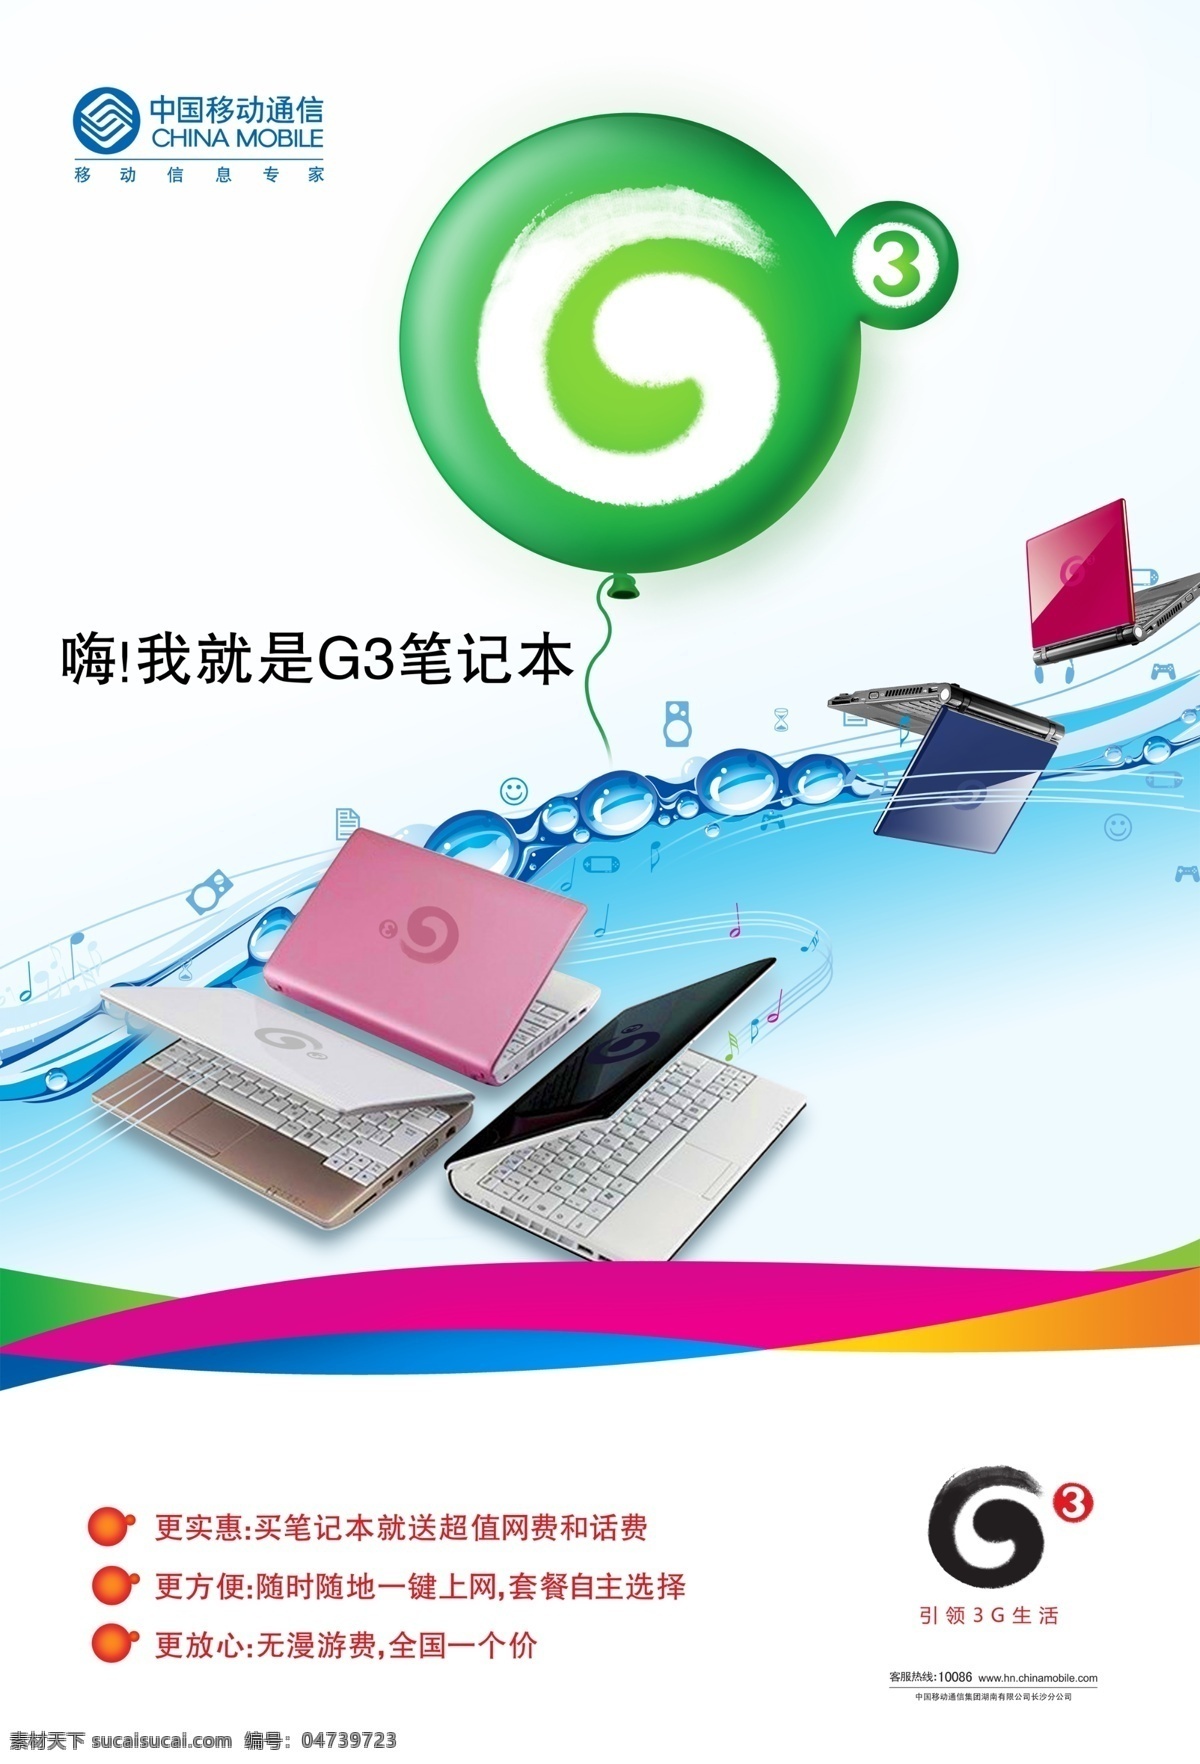 3g 分层 移动 源文件库 中国移动 g3 td 上网 笔记本 3g笔记本 上网笔记本 td上网本 矢量图 现代科技